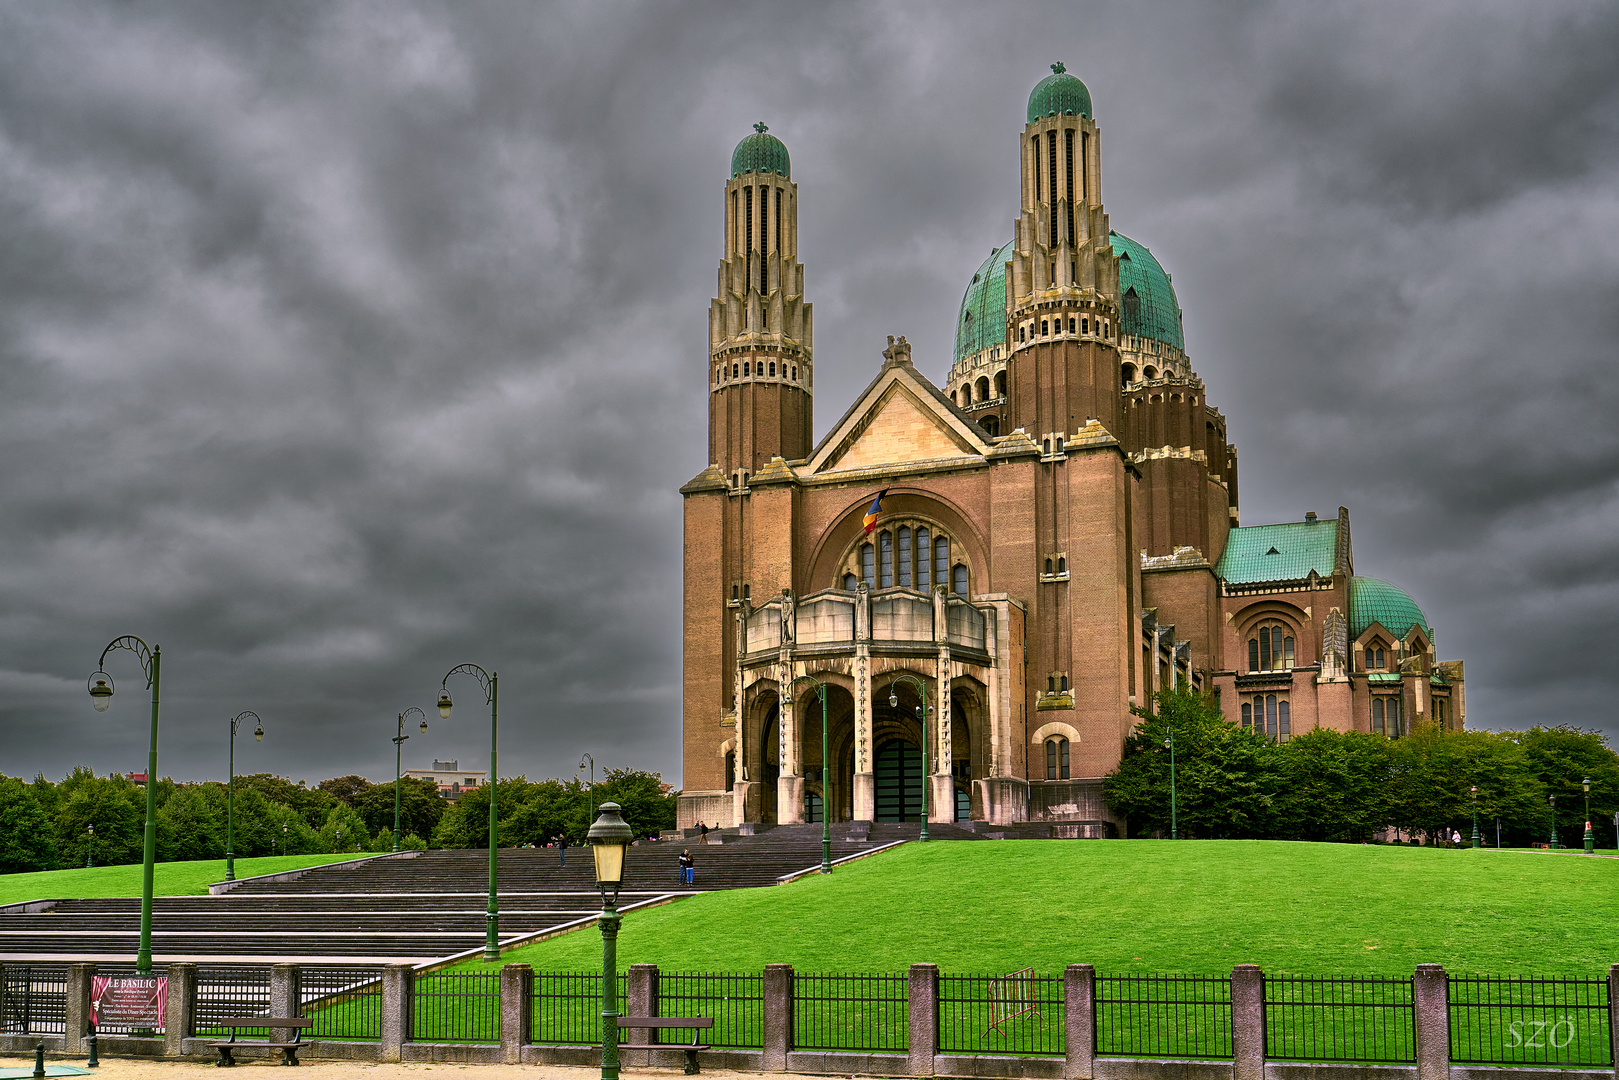 Basílica de Koekelberg